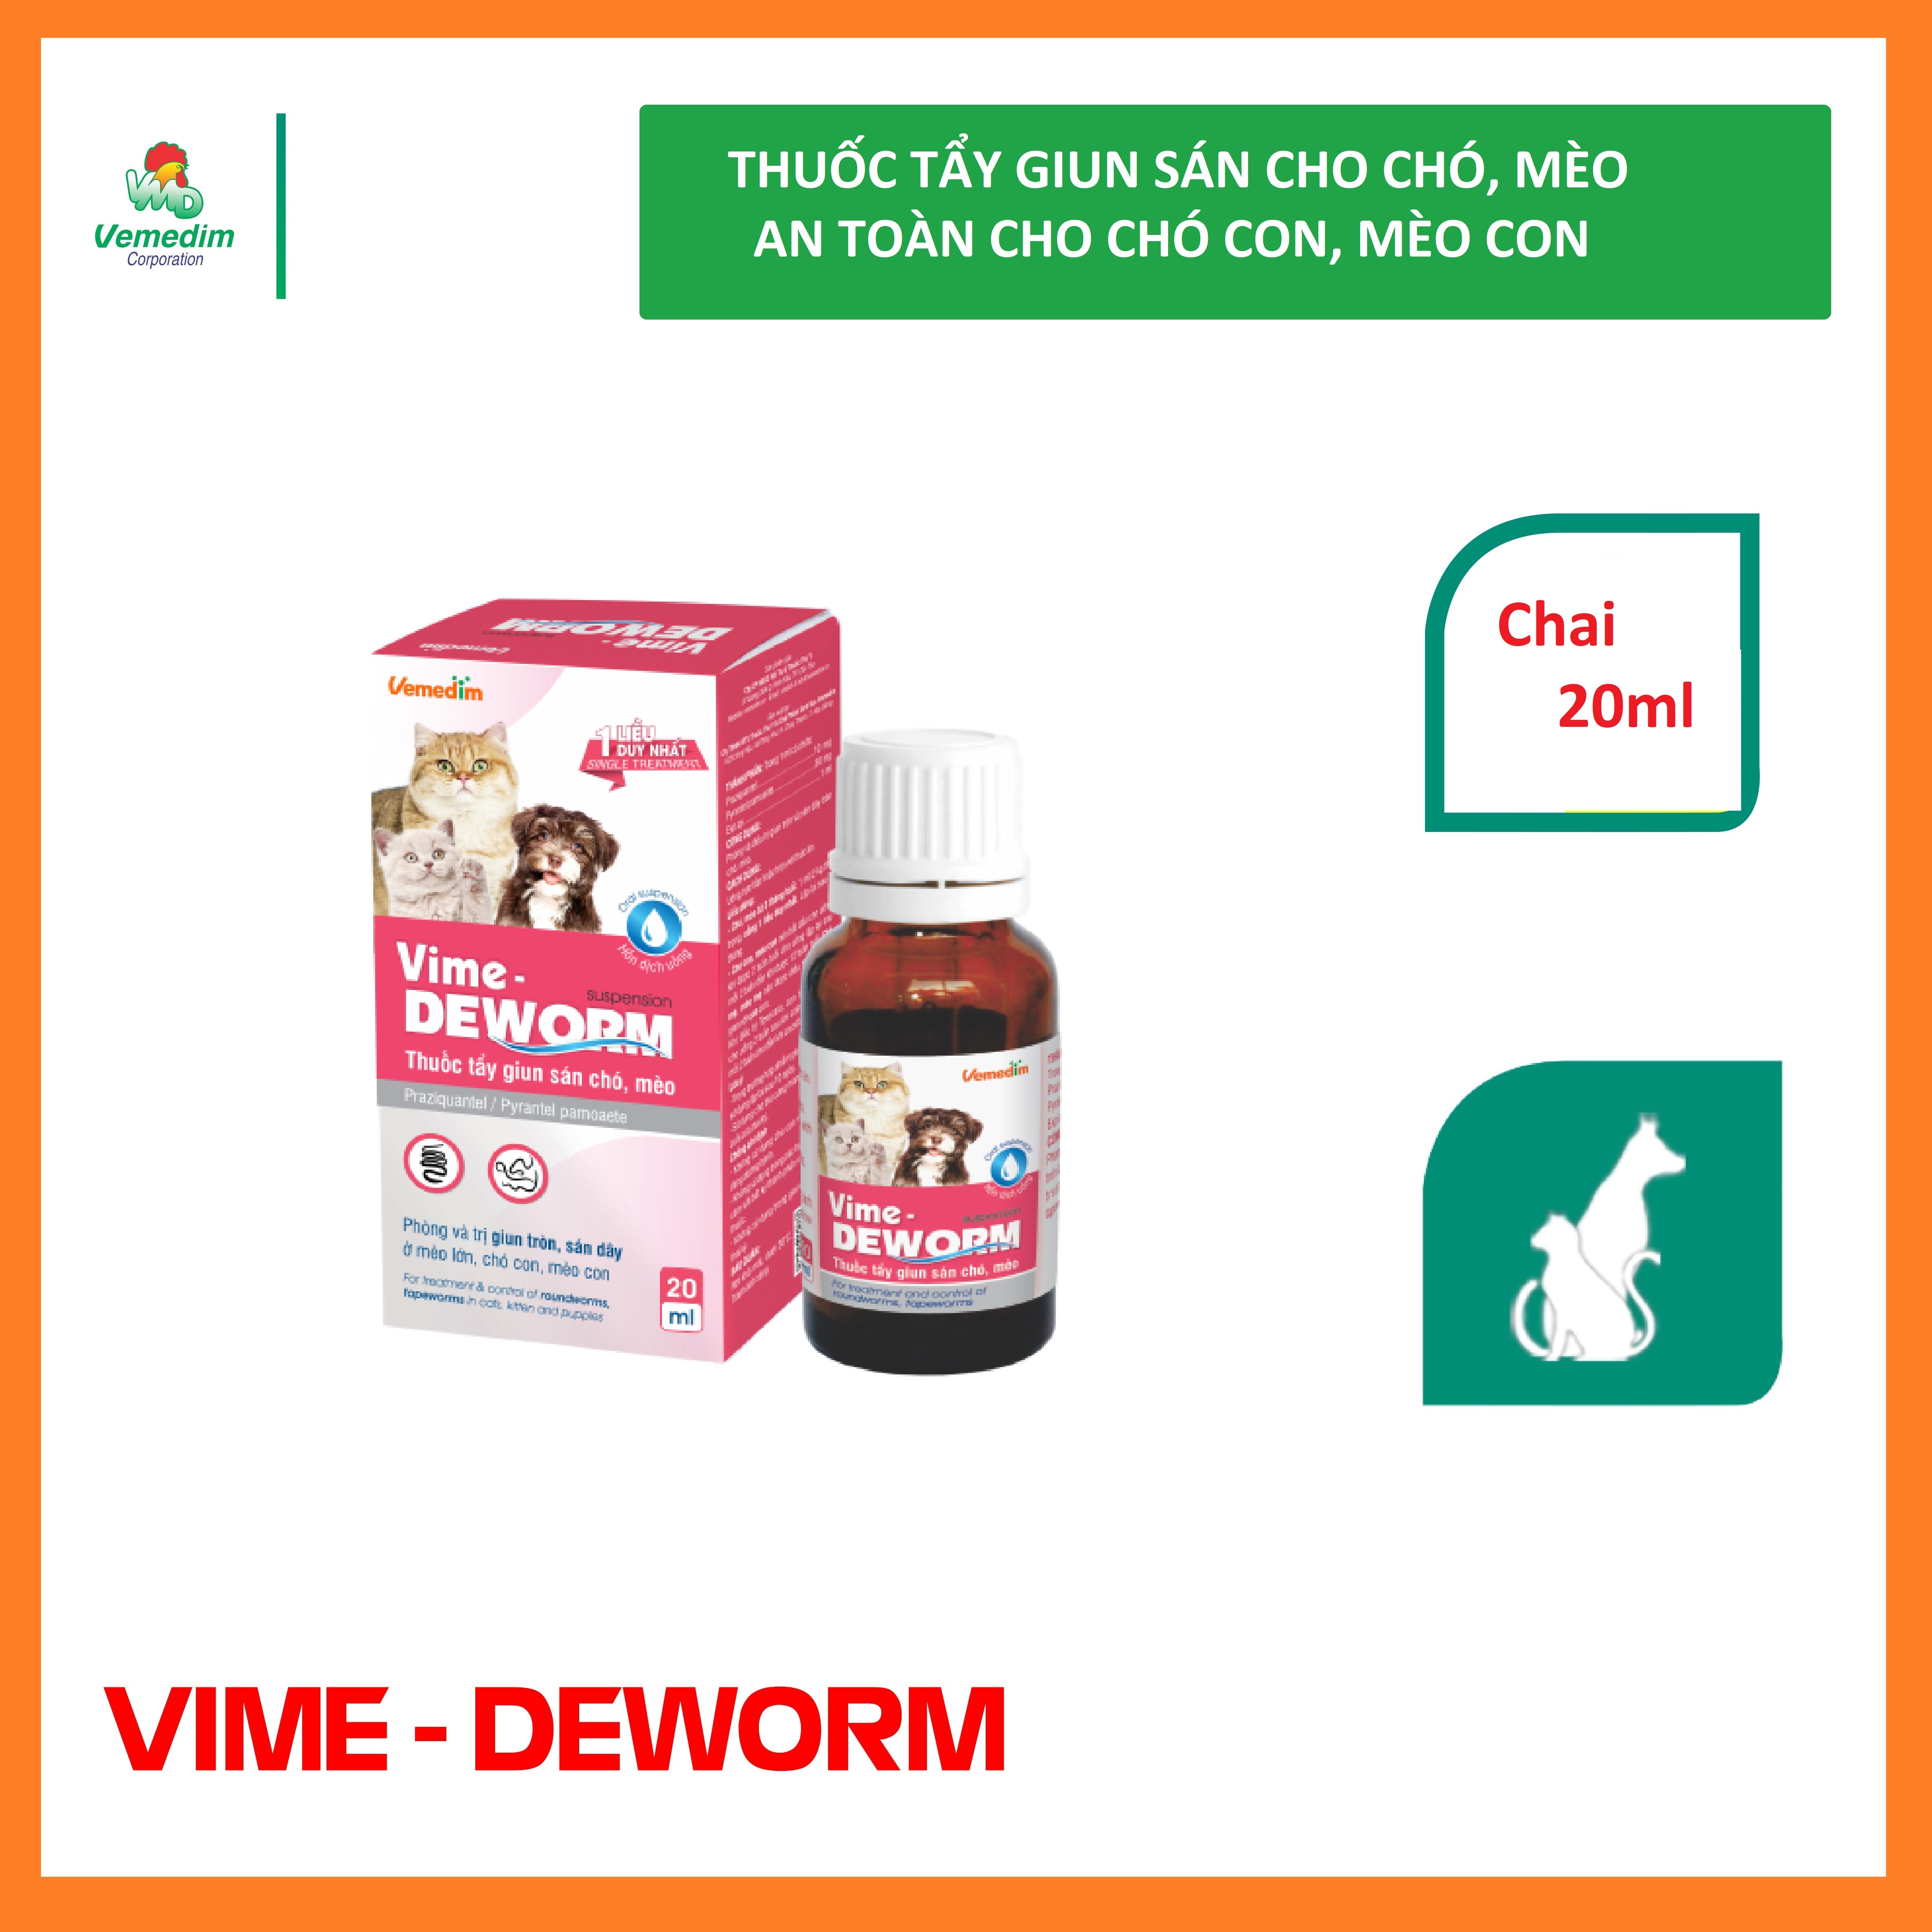 Vemedim Vime-deworm phòng và điều tr.ị giun sán cho chó, mèo, an toàn cho chó con và mèo con, chai 20ml